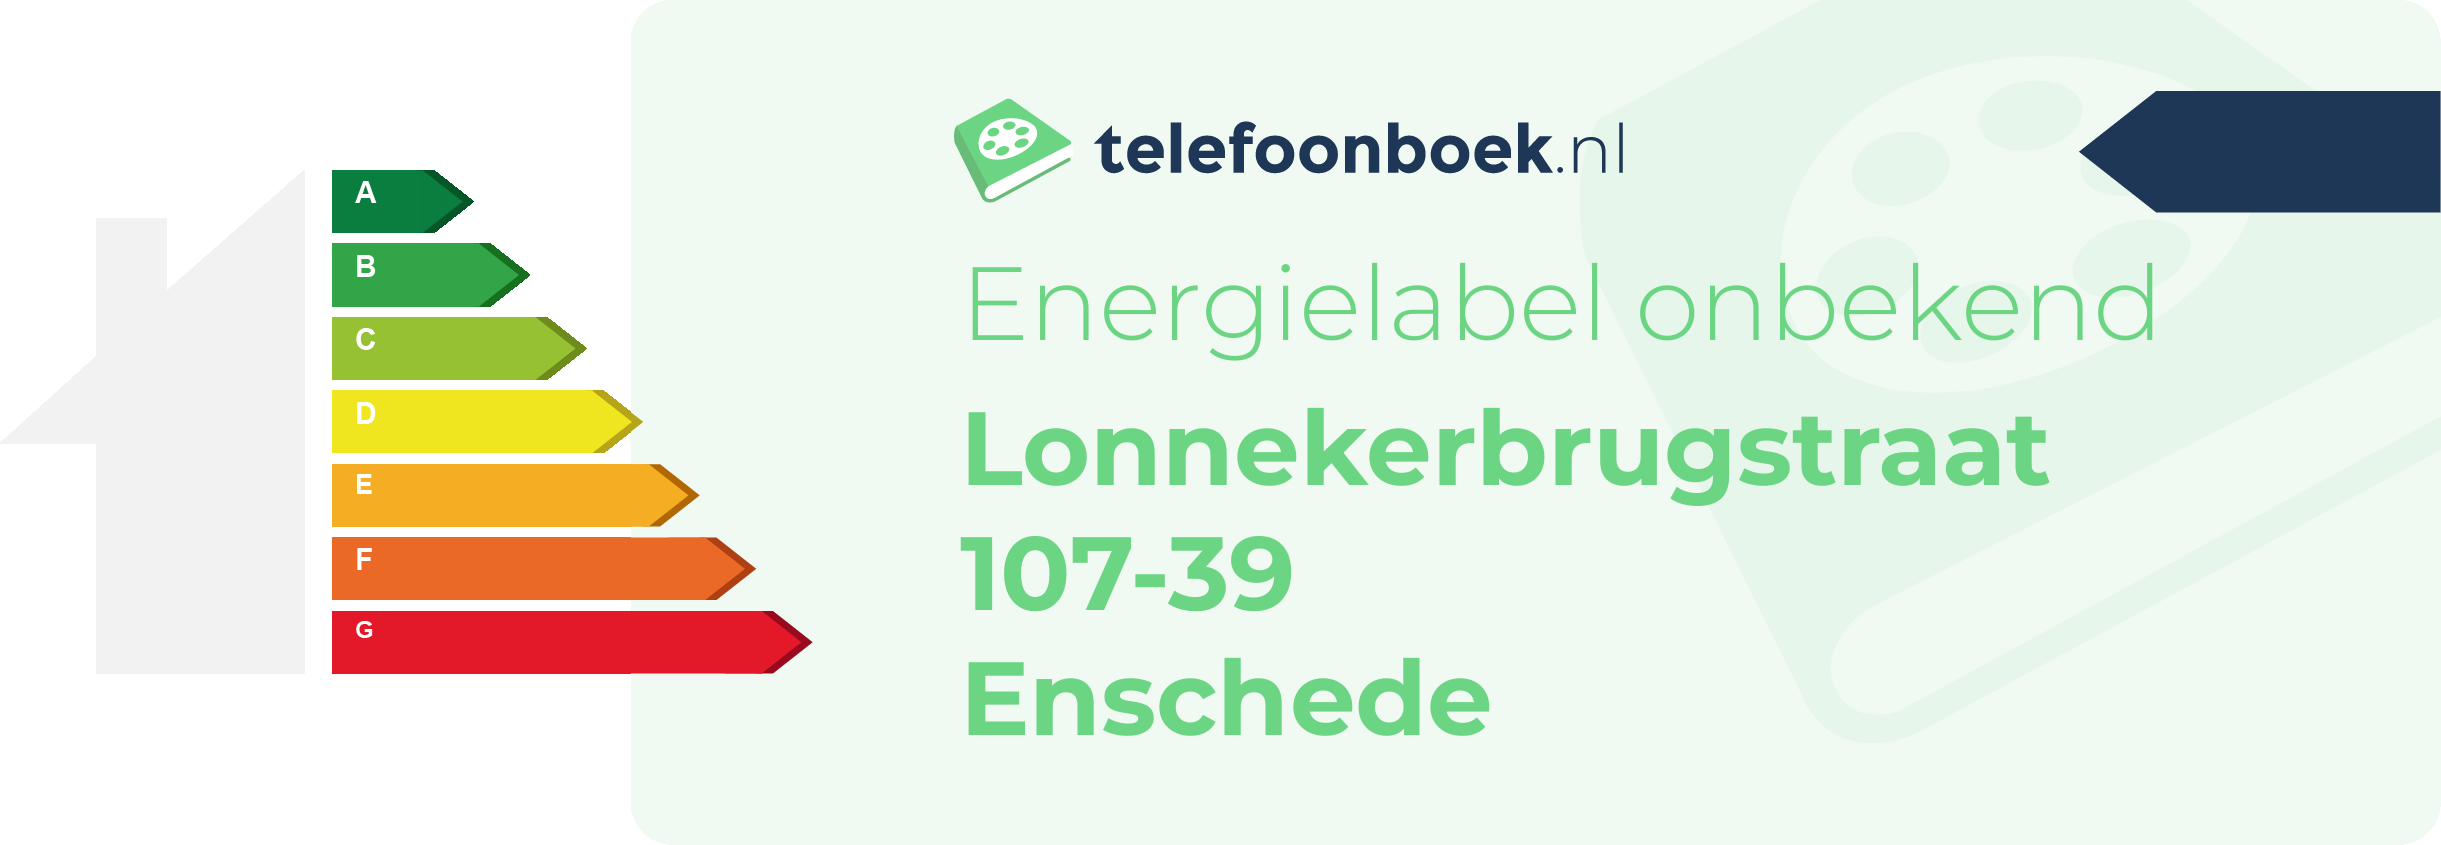 Energielabel Lonnekerbrugstraat 107-39 Enschede